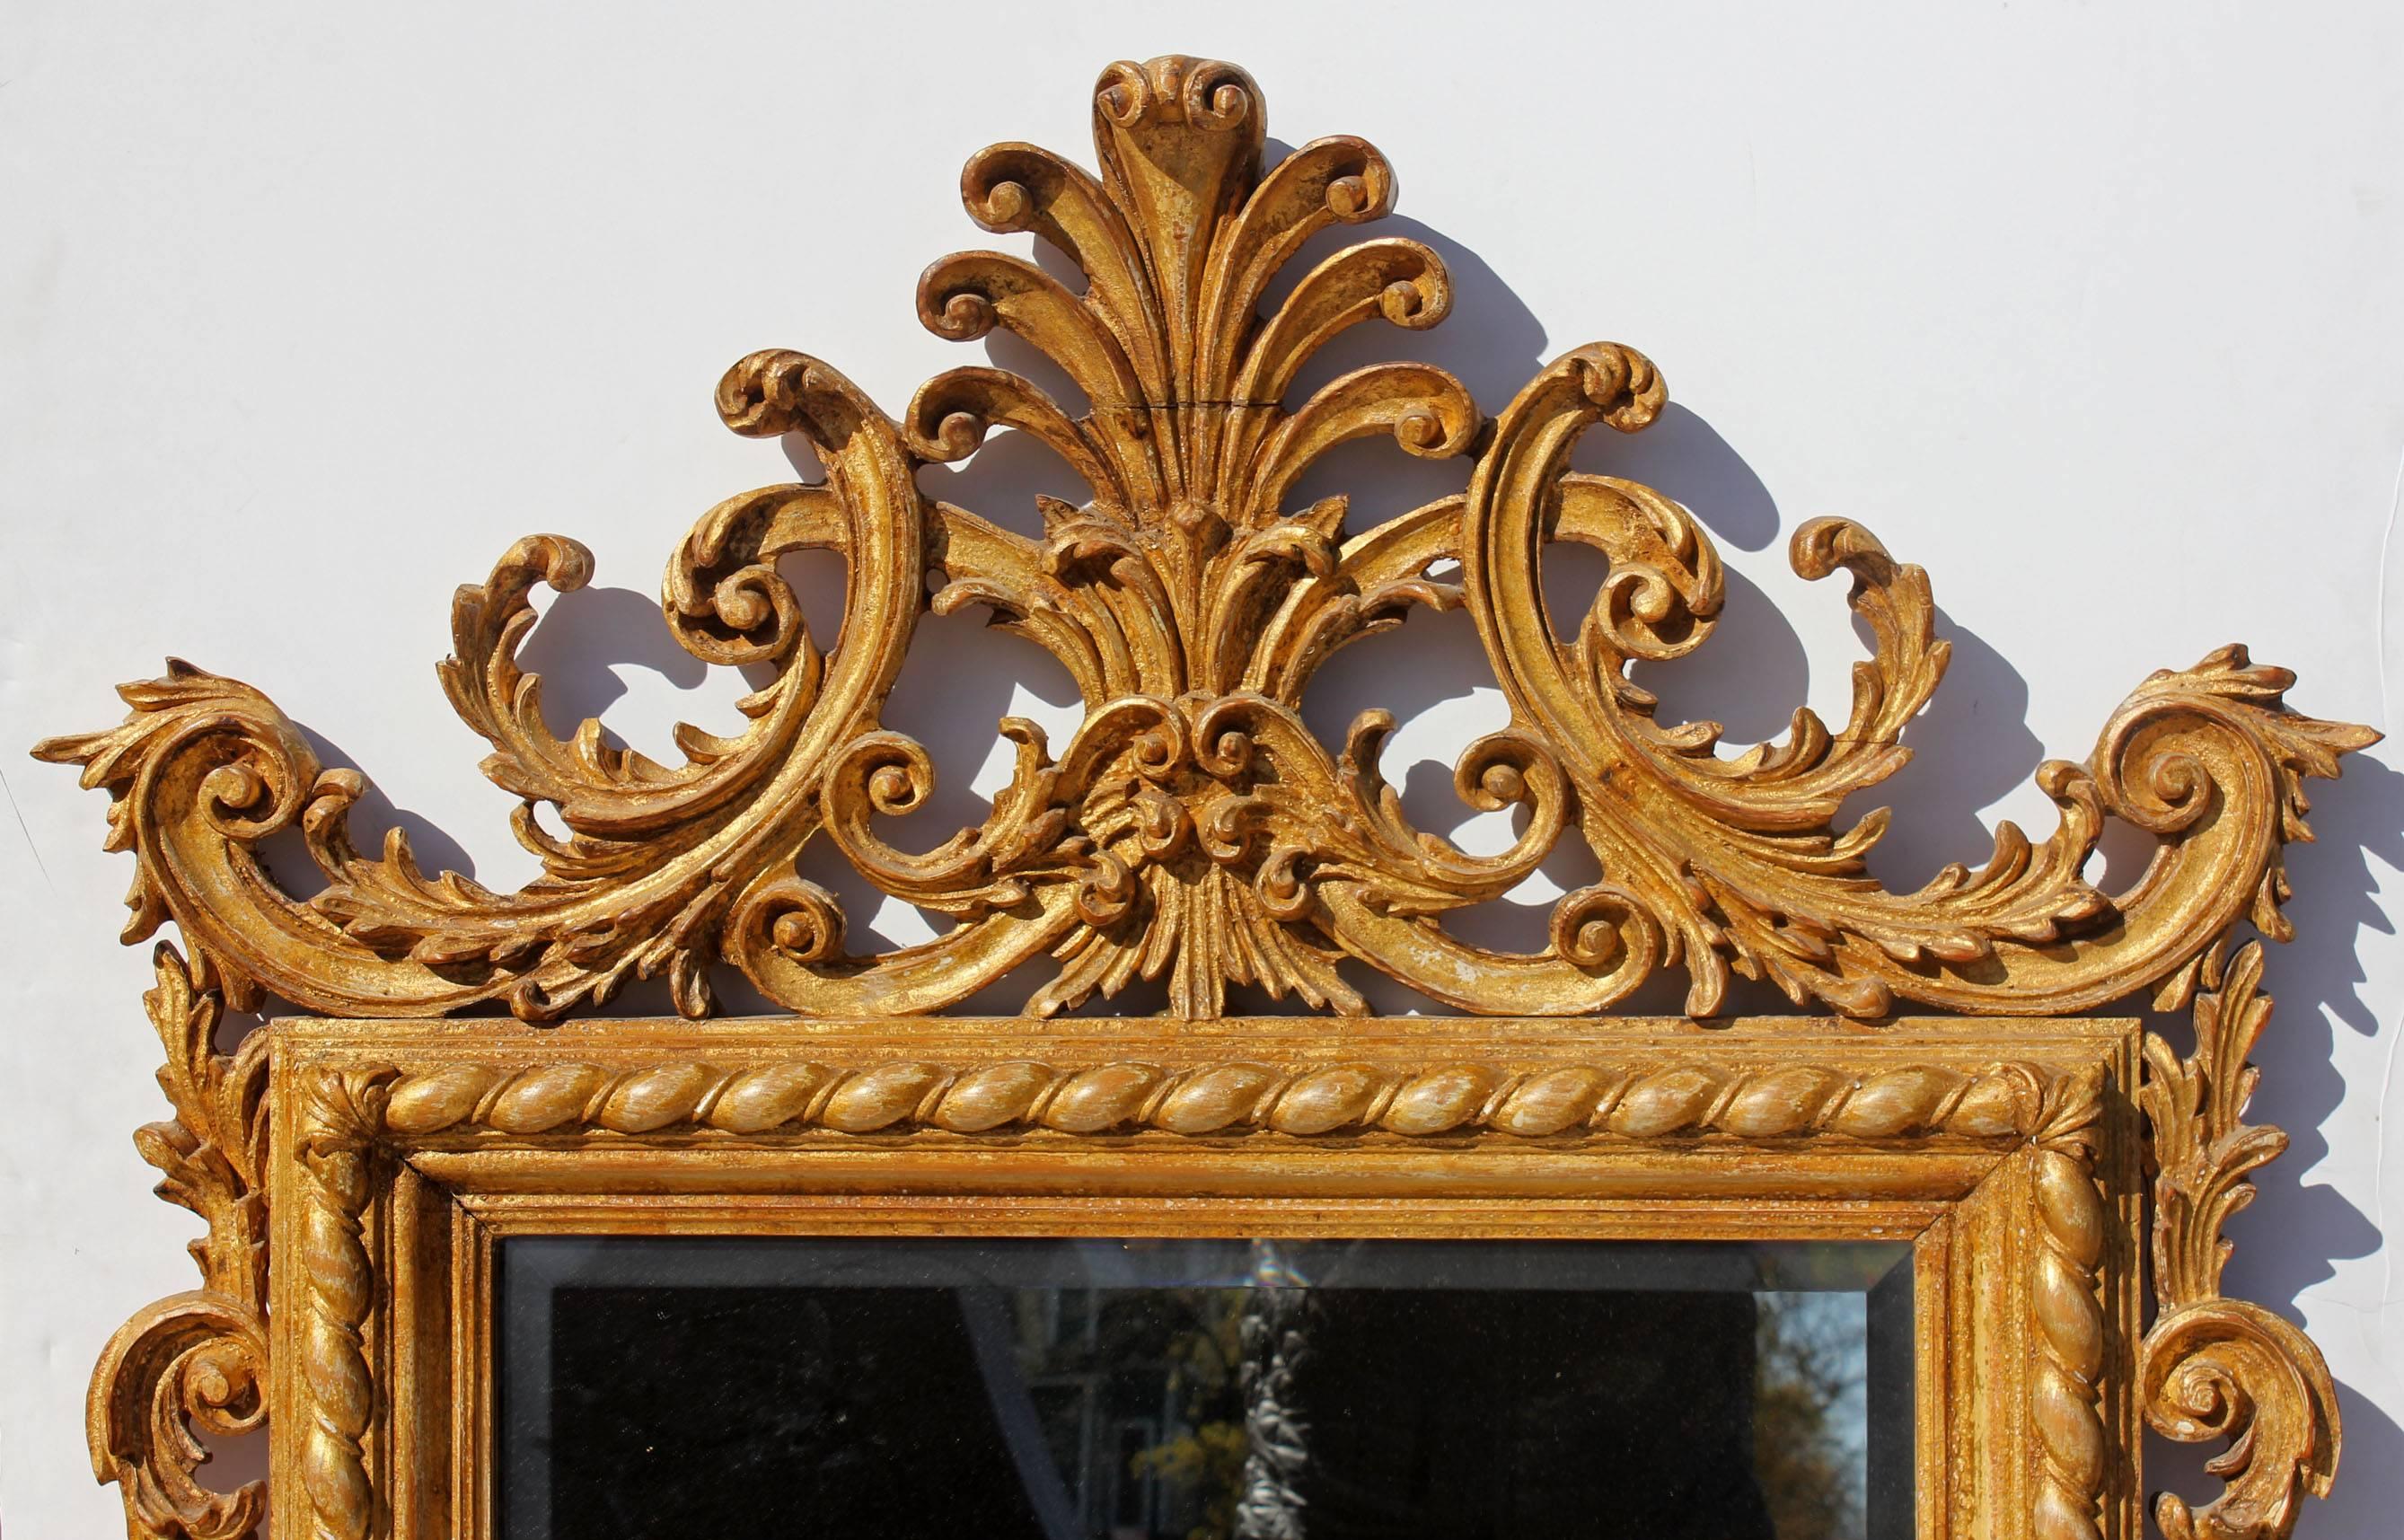 Fein geschnitzter und vergoldeter Spiegel aus Massivholz mit abgeschrägtem Glas, italienisch, neoklassizistischer Stil.